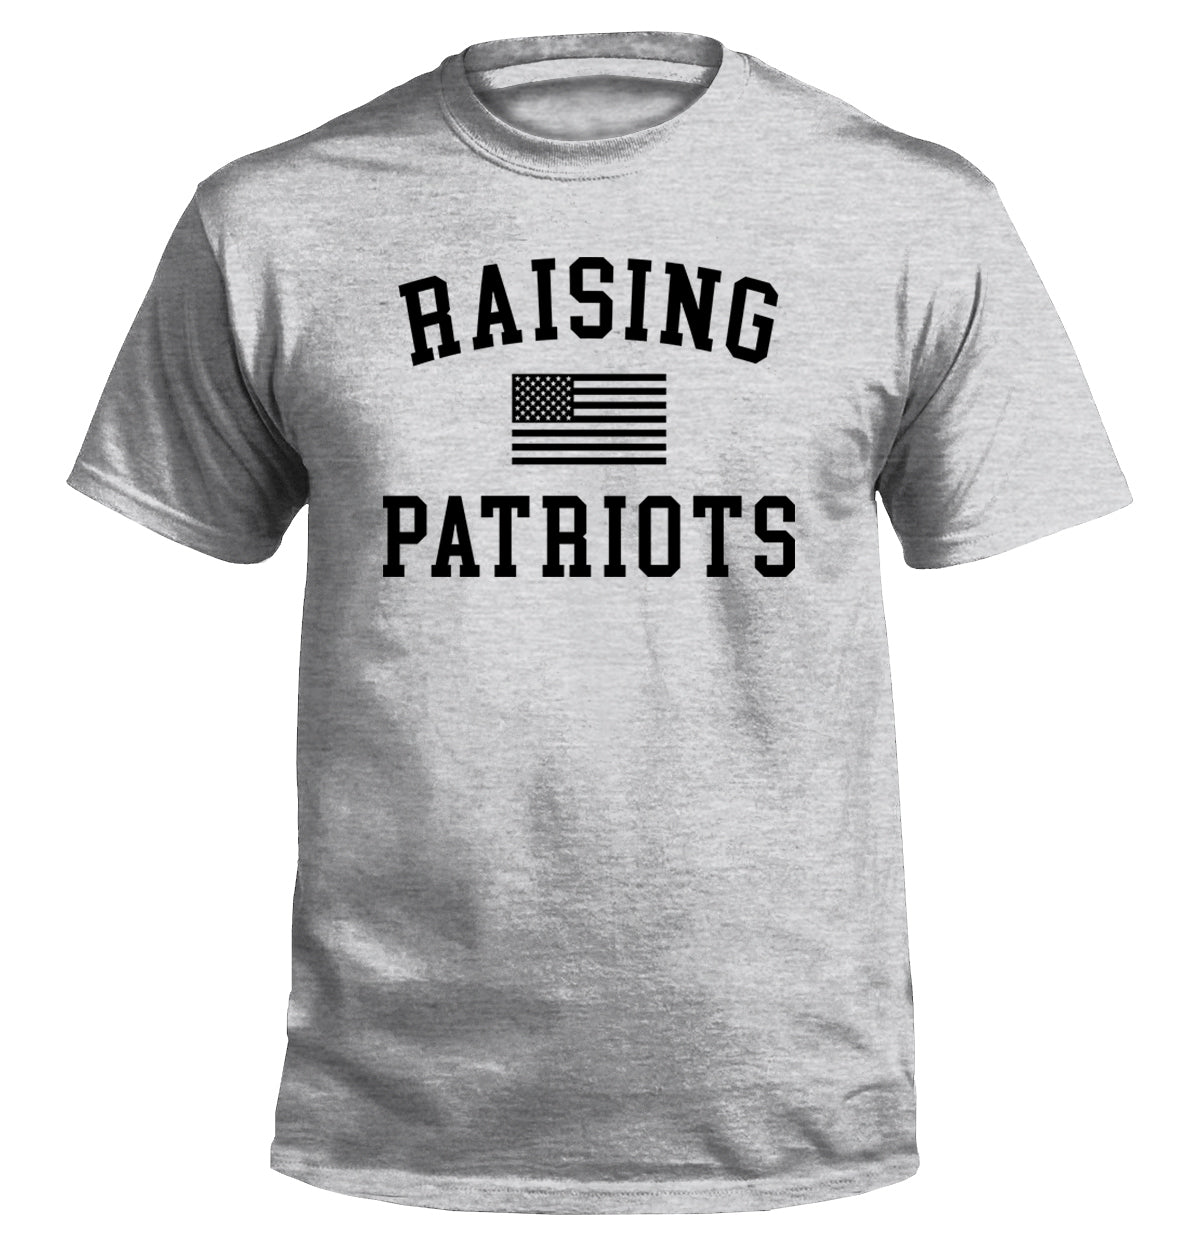 Raising Patriots